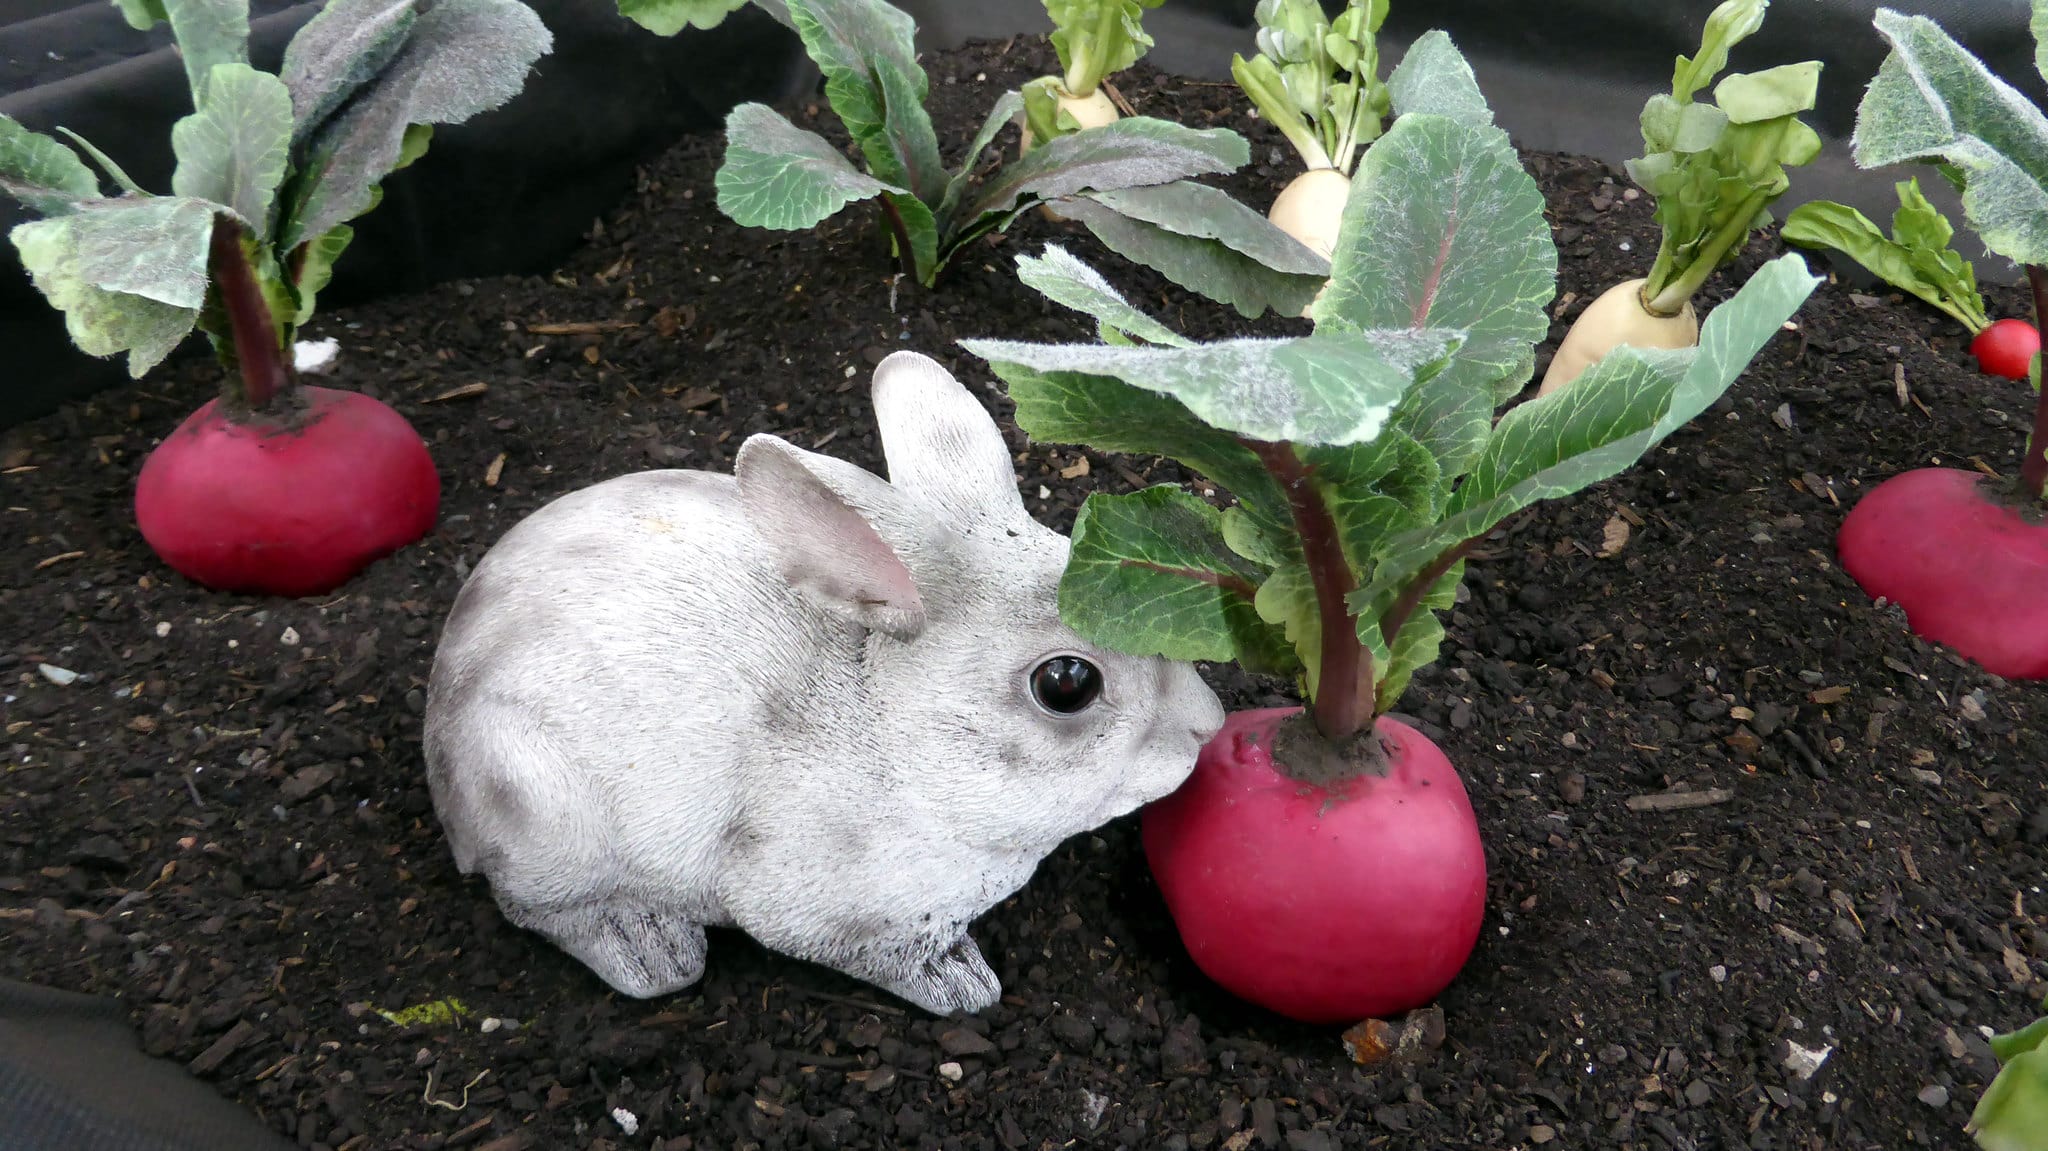 can rabbit eat radish